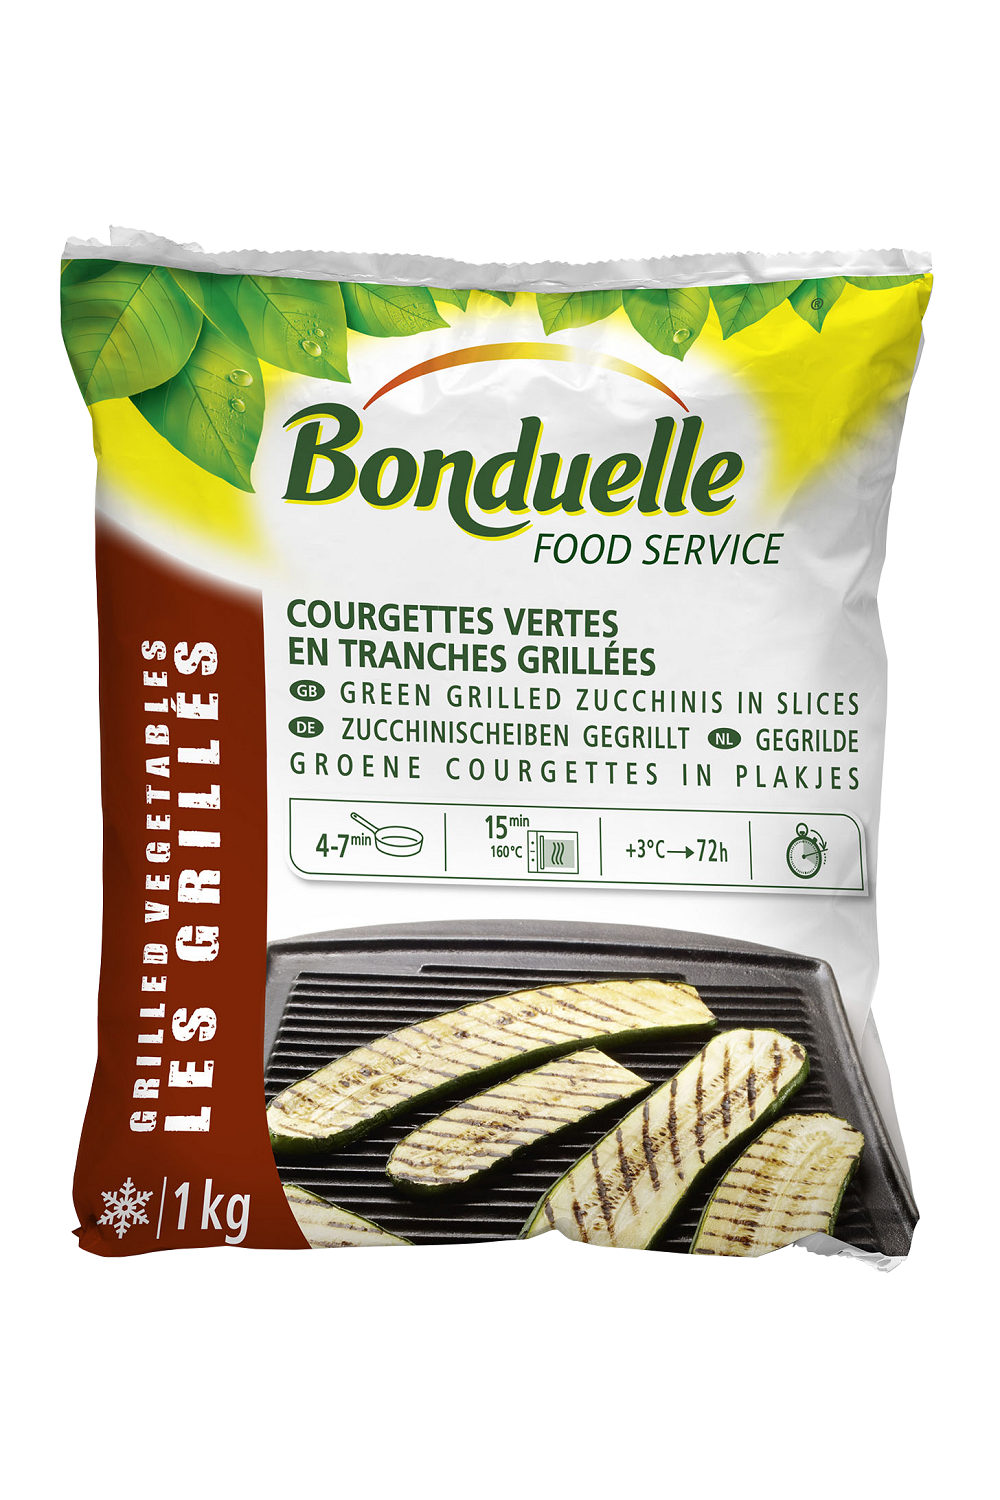 Gegrilde Groene Courgettes in plakjes 1kg Bonduelle Food Service Diepvries